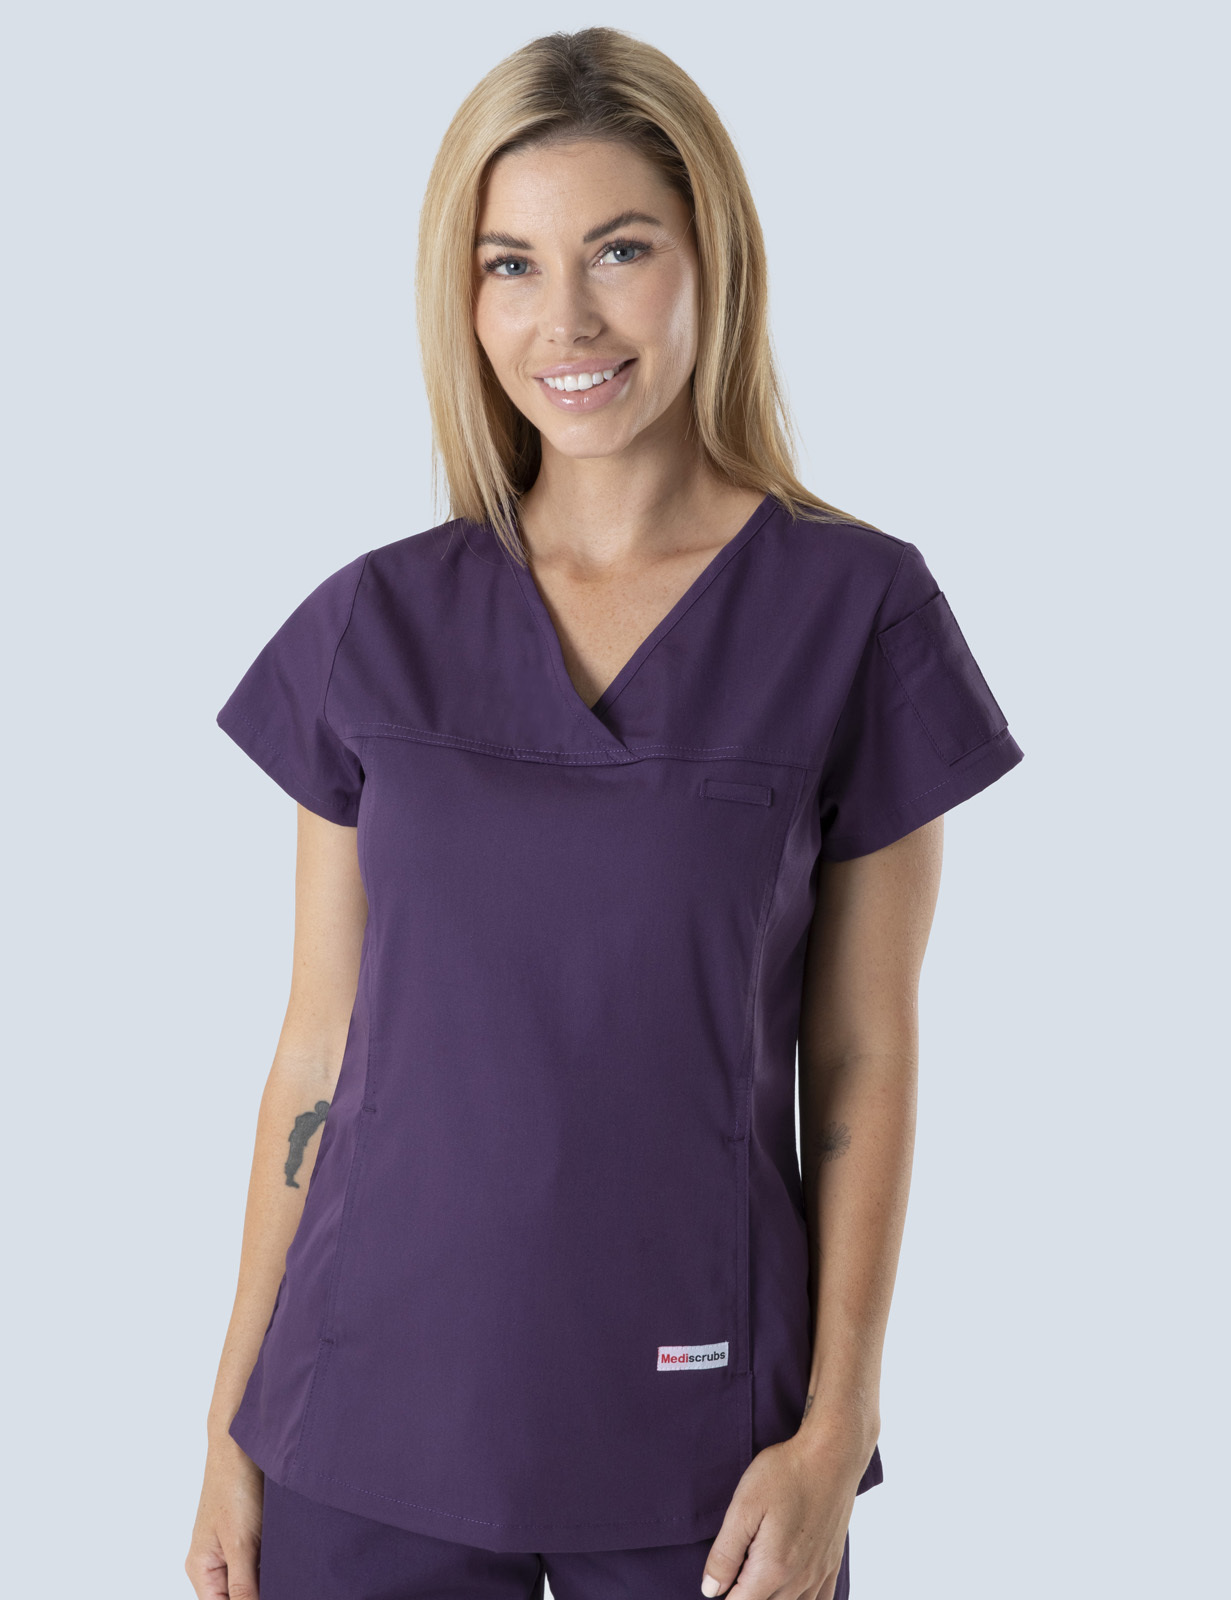 Queensland Children's Hospital Emergency Department Assistant in Nursing  Uniform Top Bundle  (Women's Fit Top in Aubergine incl Logos)